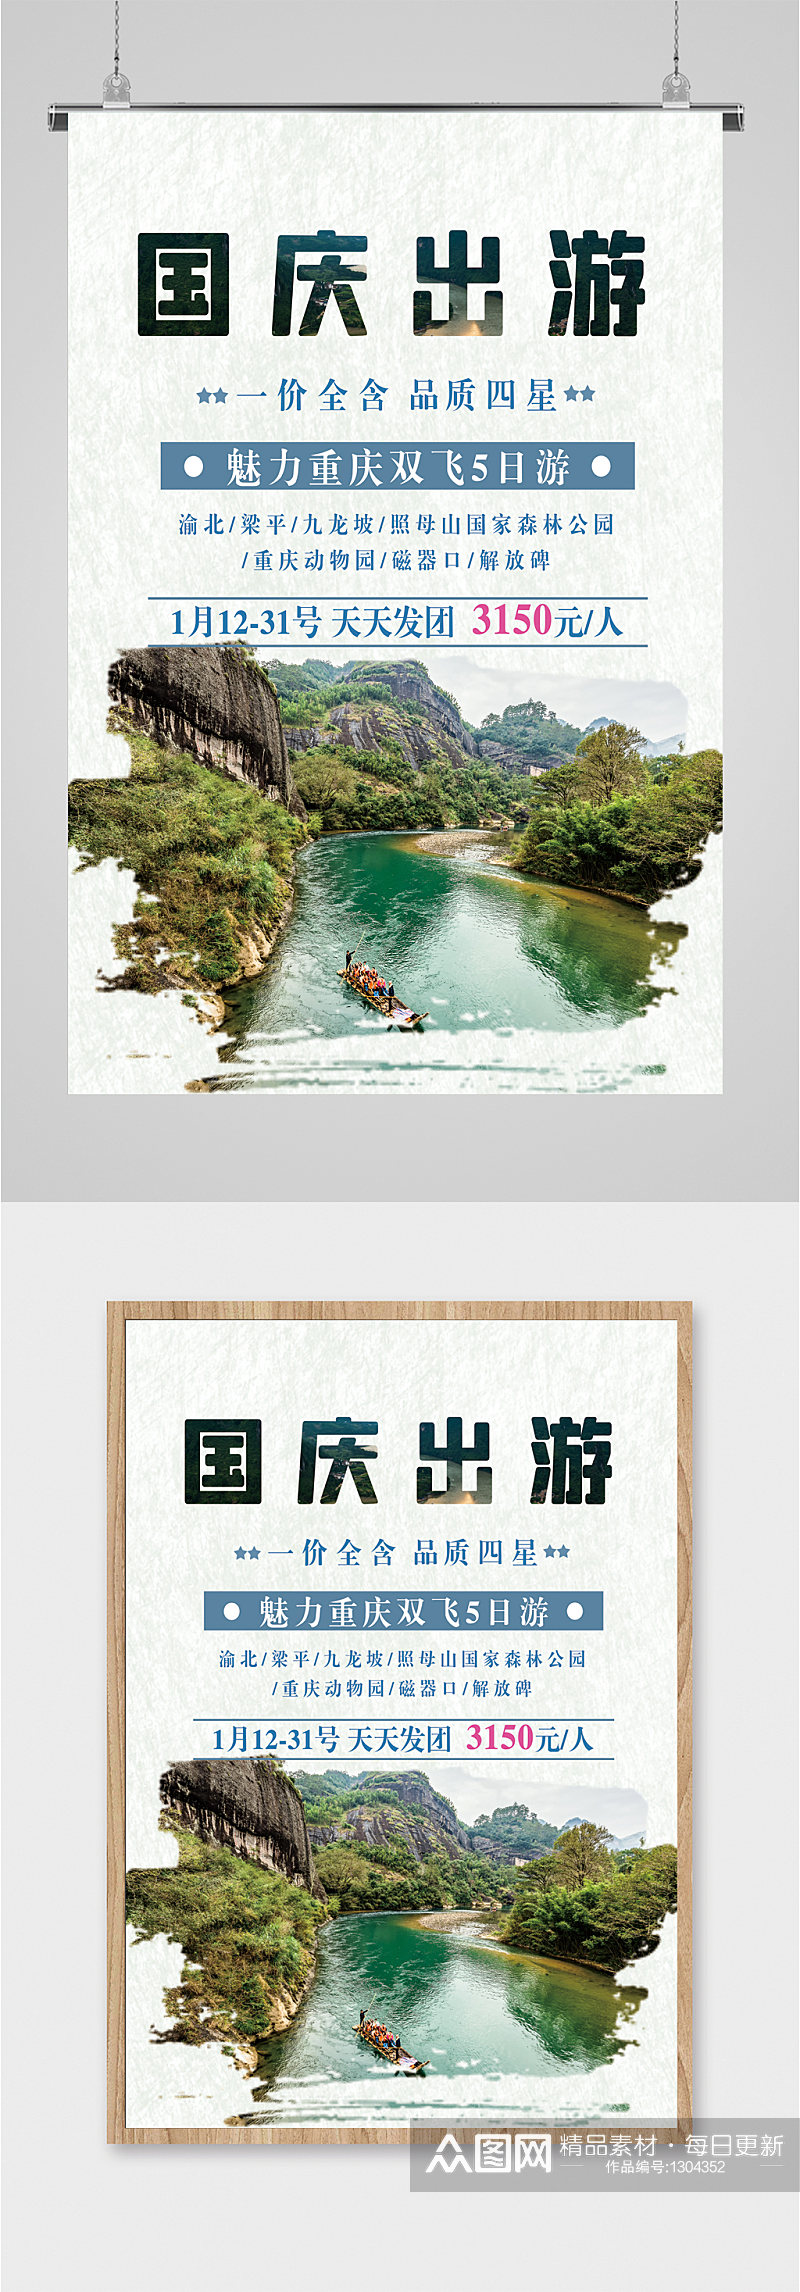 国庆出游旅行社海报素材